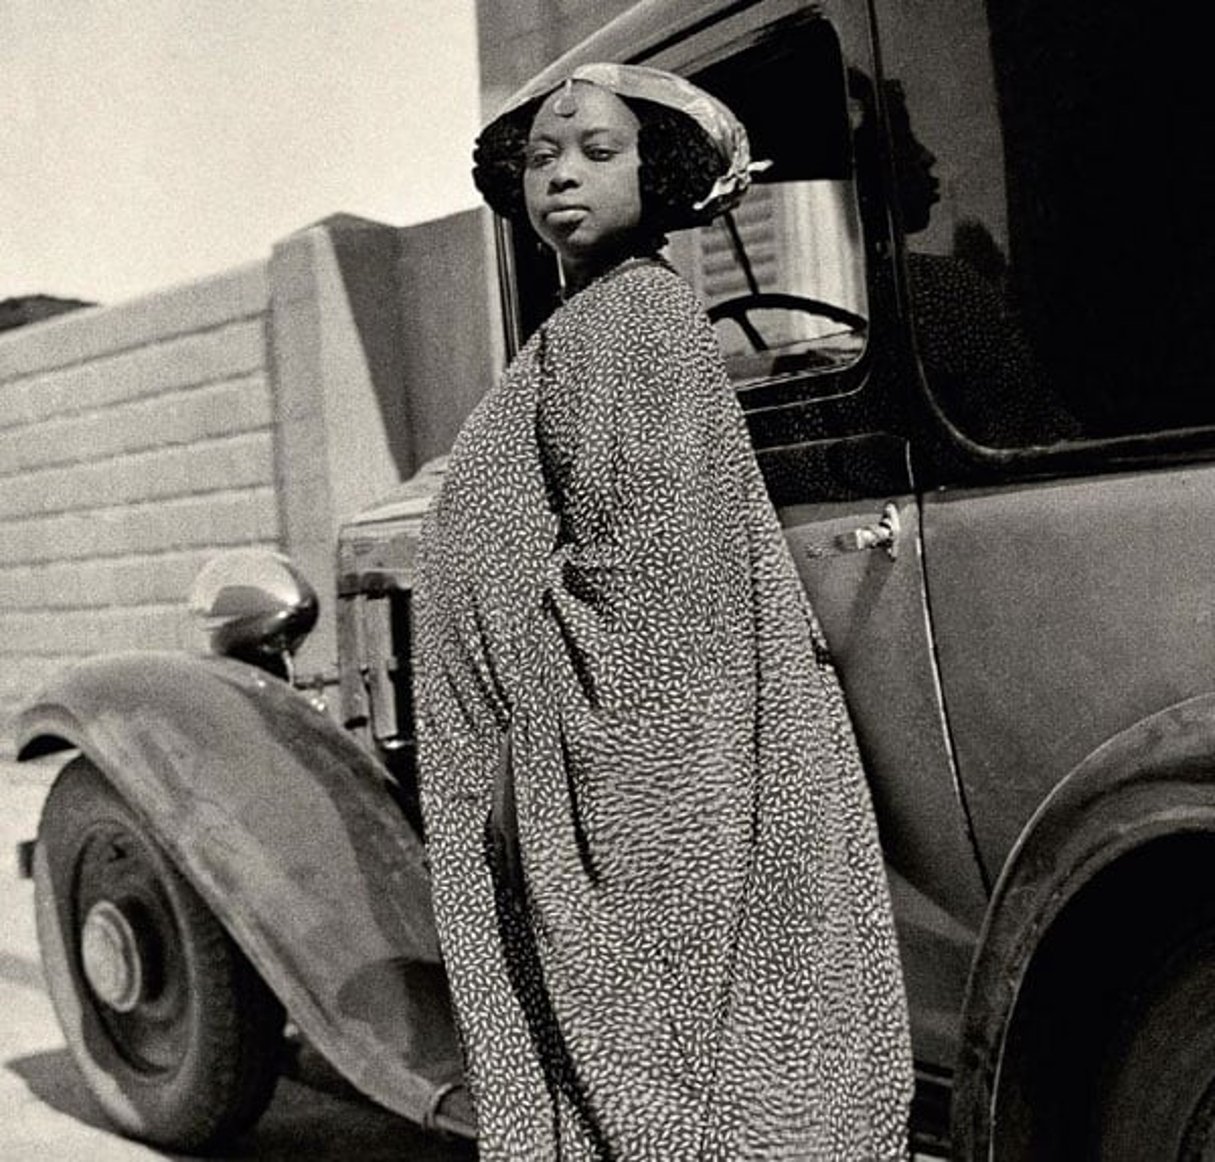 Cliché pris à Saint-Louis au Sénégal, par un photographe local anonyme (vers 1915-1930). © Courtesy Revue noire.